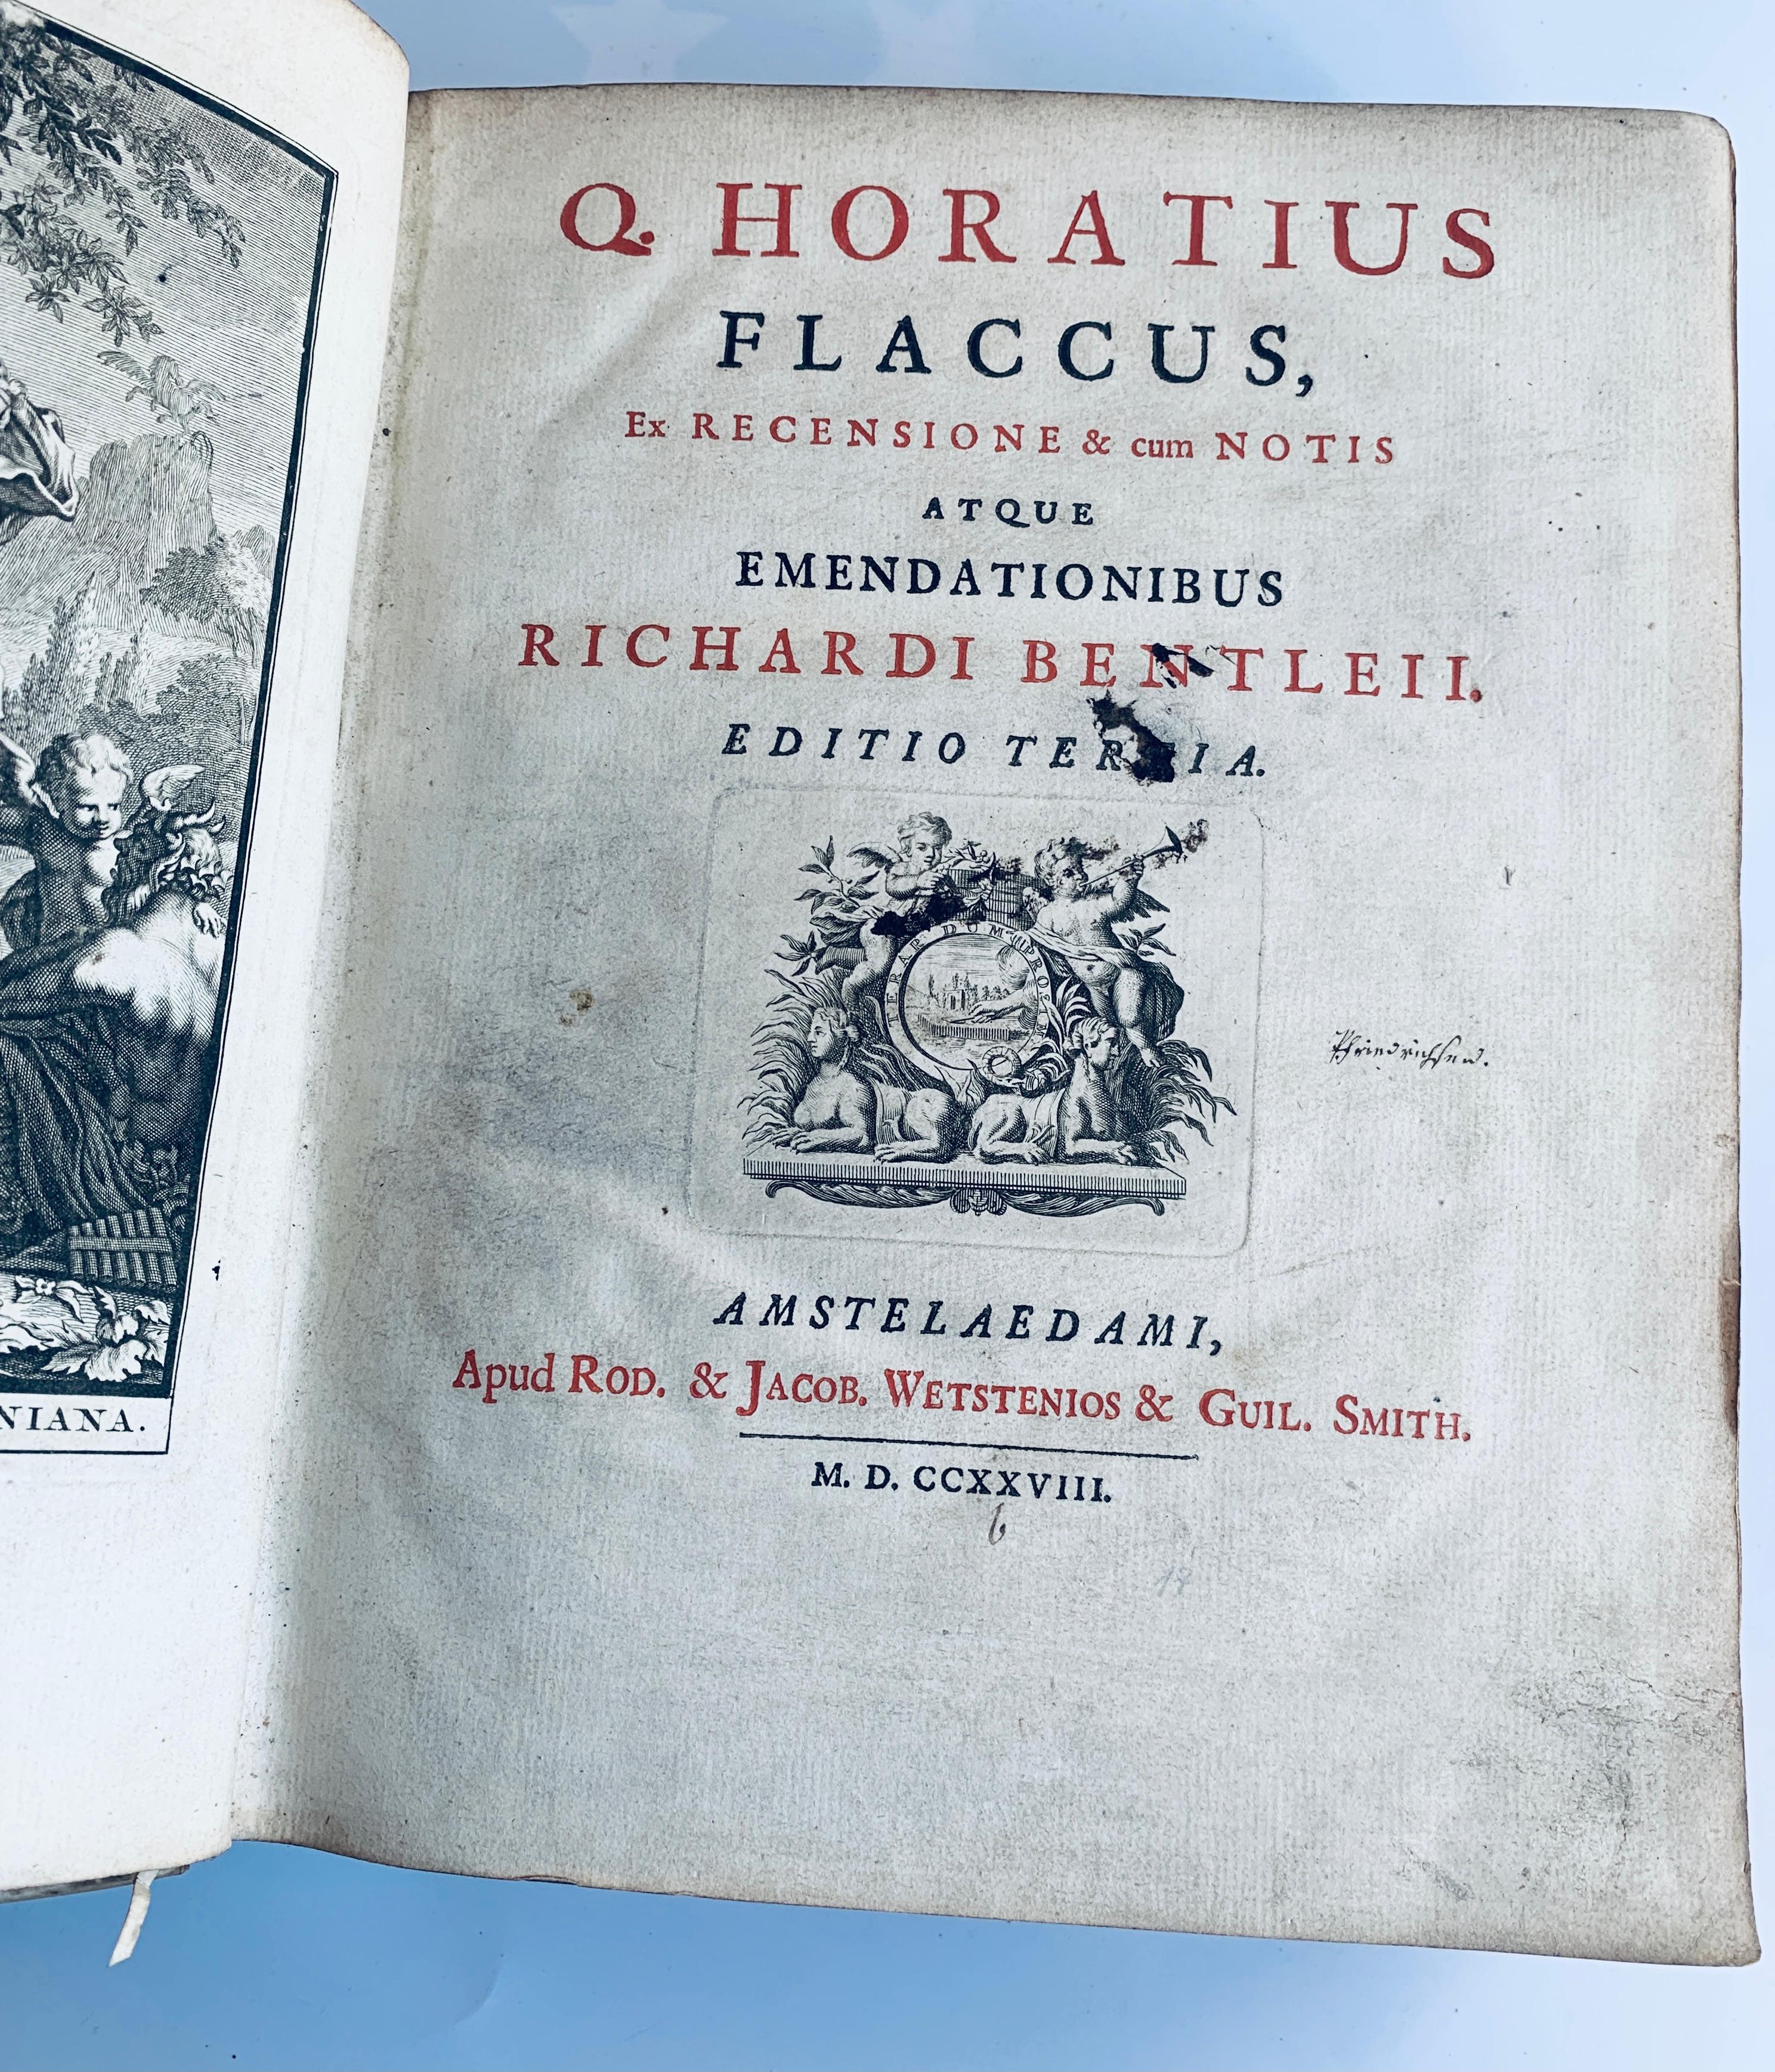 RARE Q. Horatius Flaccus (1728) Full Vellum Hardcover